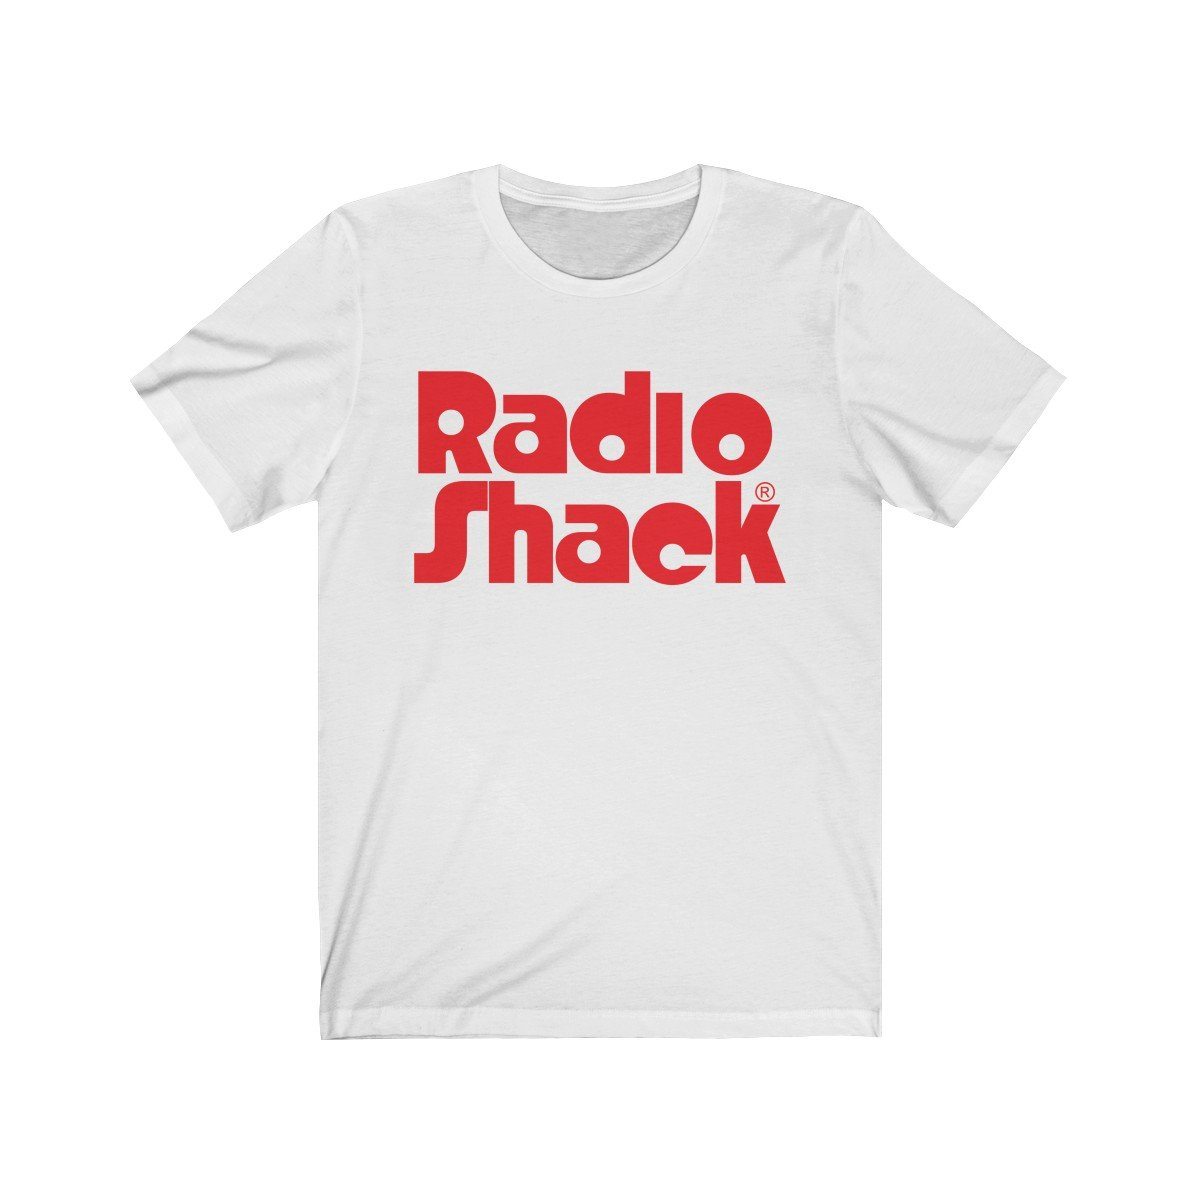 Image of RadioShack Retro Logo T-Shirt with Red Stacked Logo